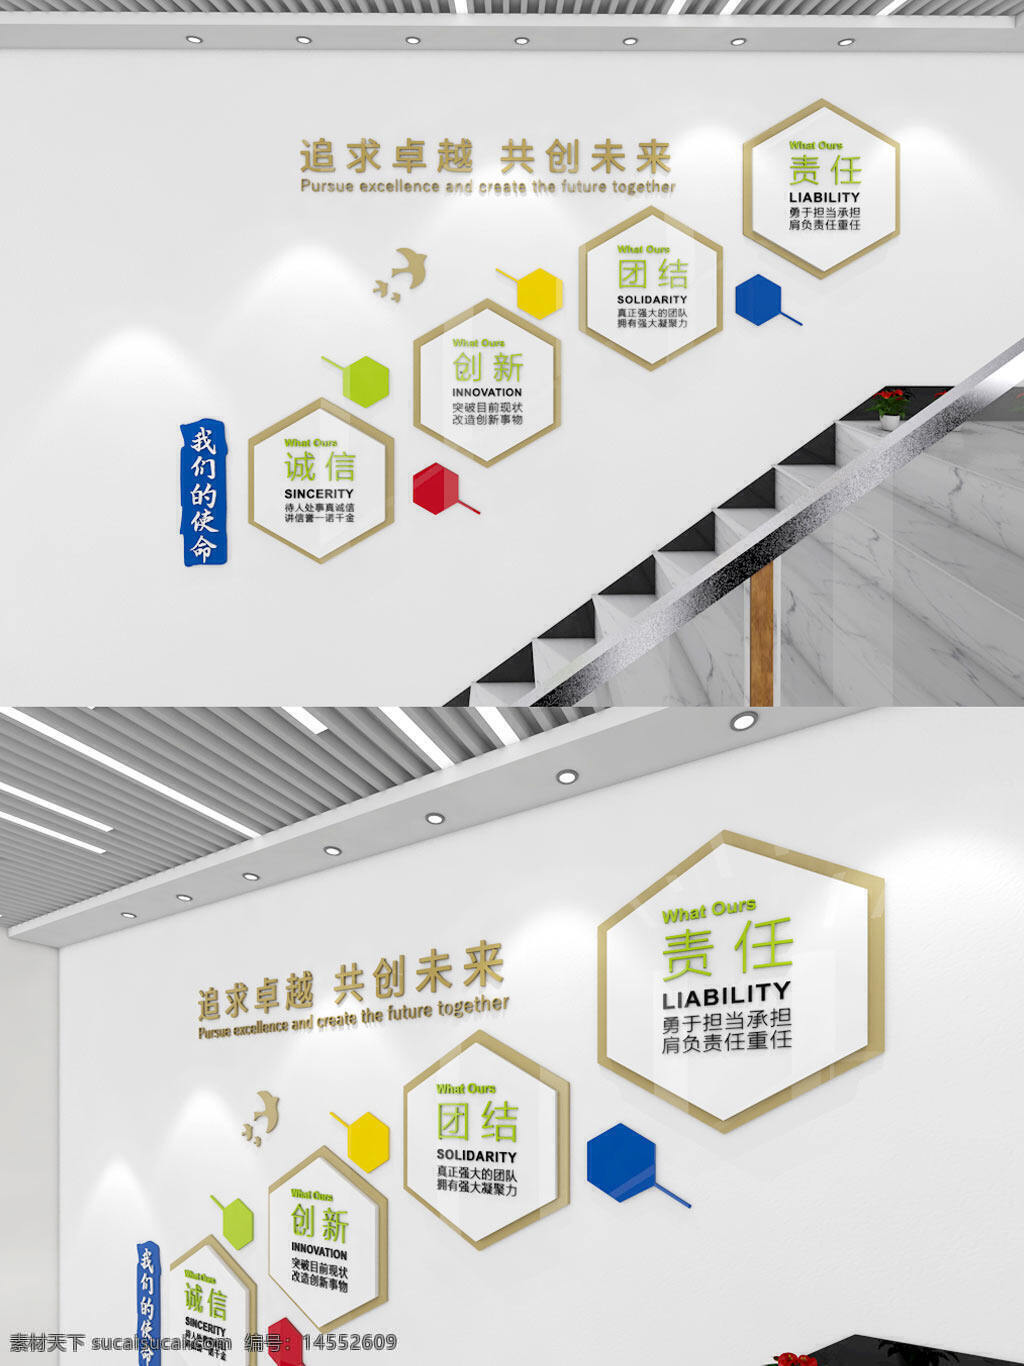 企业学校楼梯文化墙励志制度楼梯文化墙 企业 学校 楼梯文化墙 励志制度